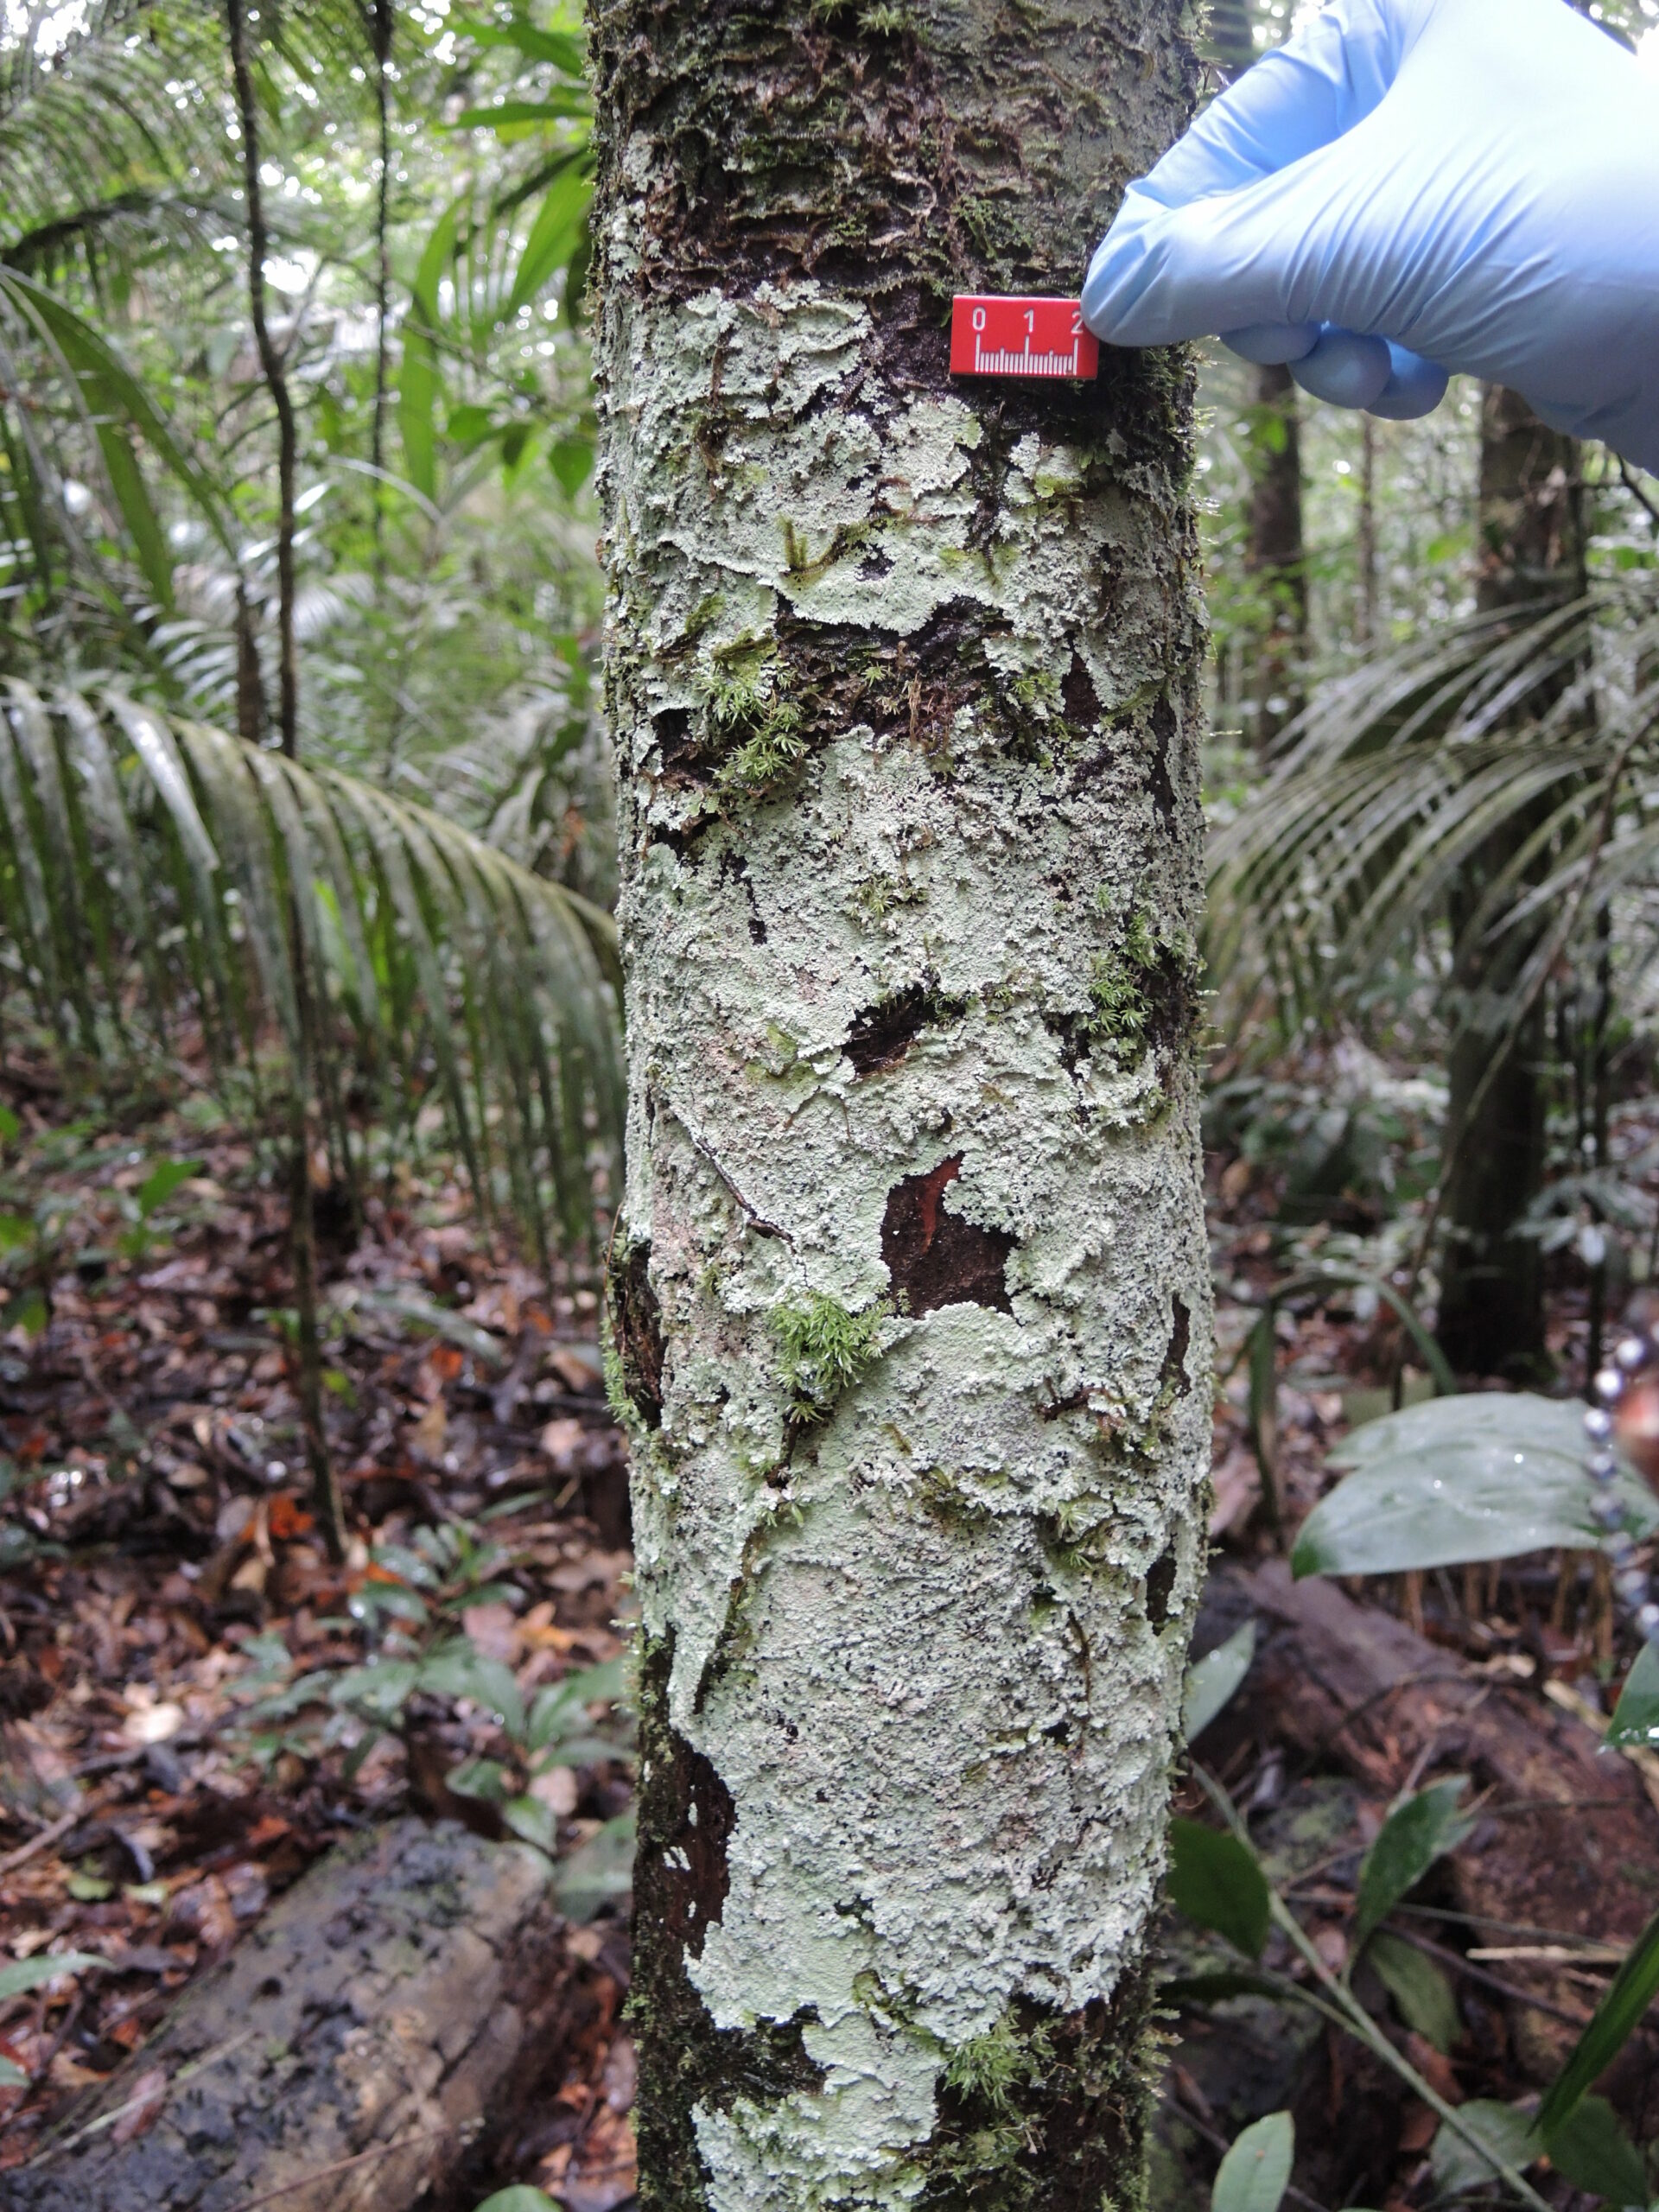 Um exemplo é este líquen chamado Phyllopsora gossypina crescendo em um tronco de árvore. © Achim Edtbauer / MPI-C.